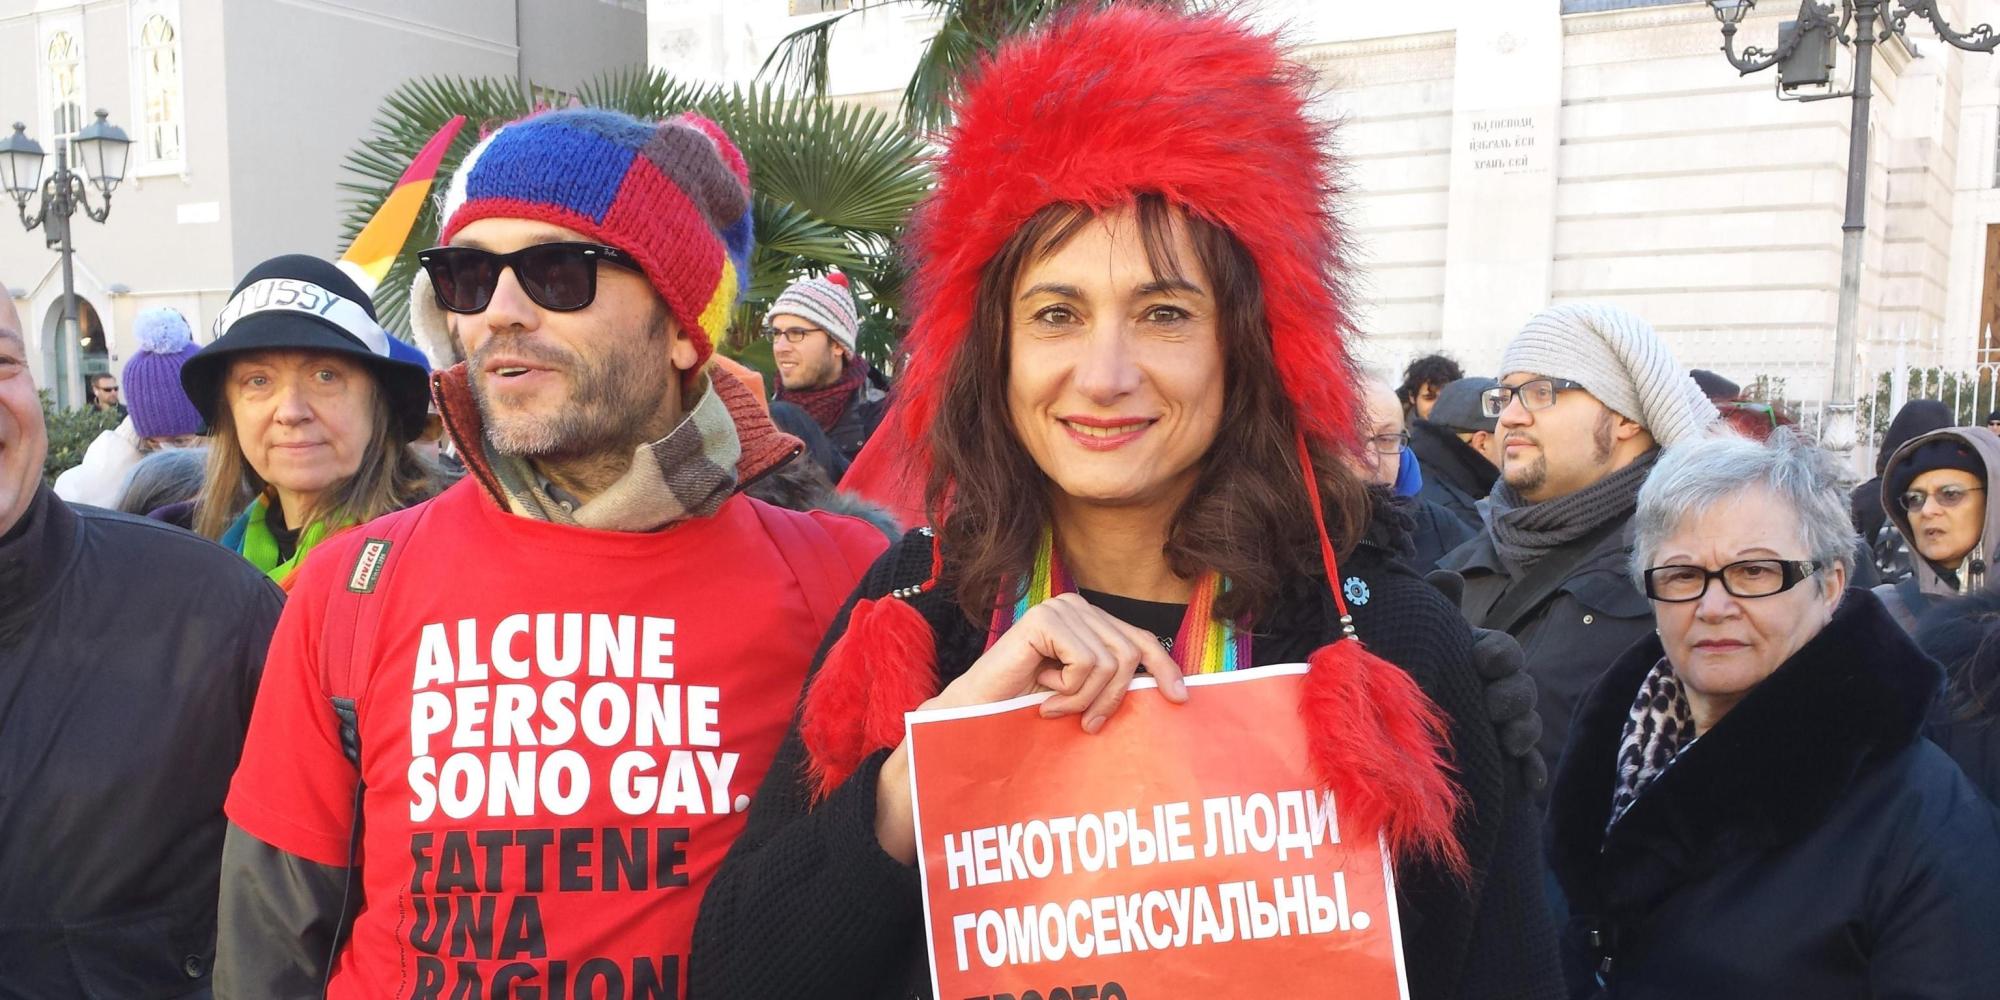 Sochi 2014: Luxuria arrestata (e poi liberata) per legge contro propaganda gay